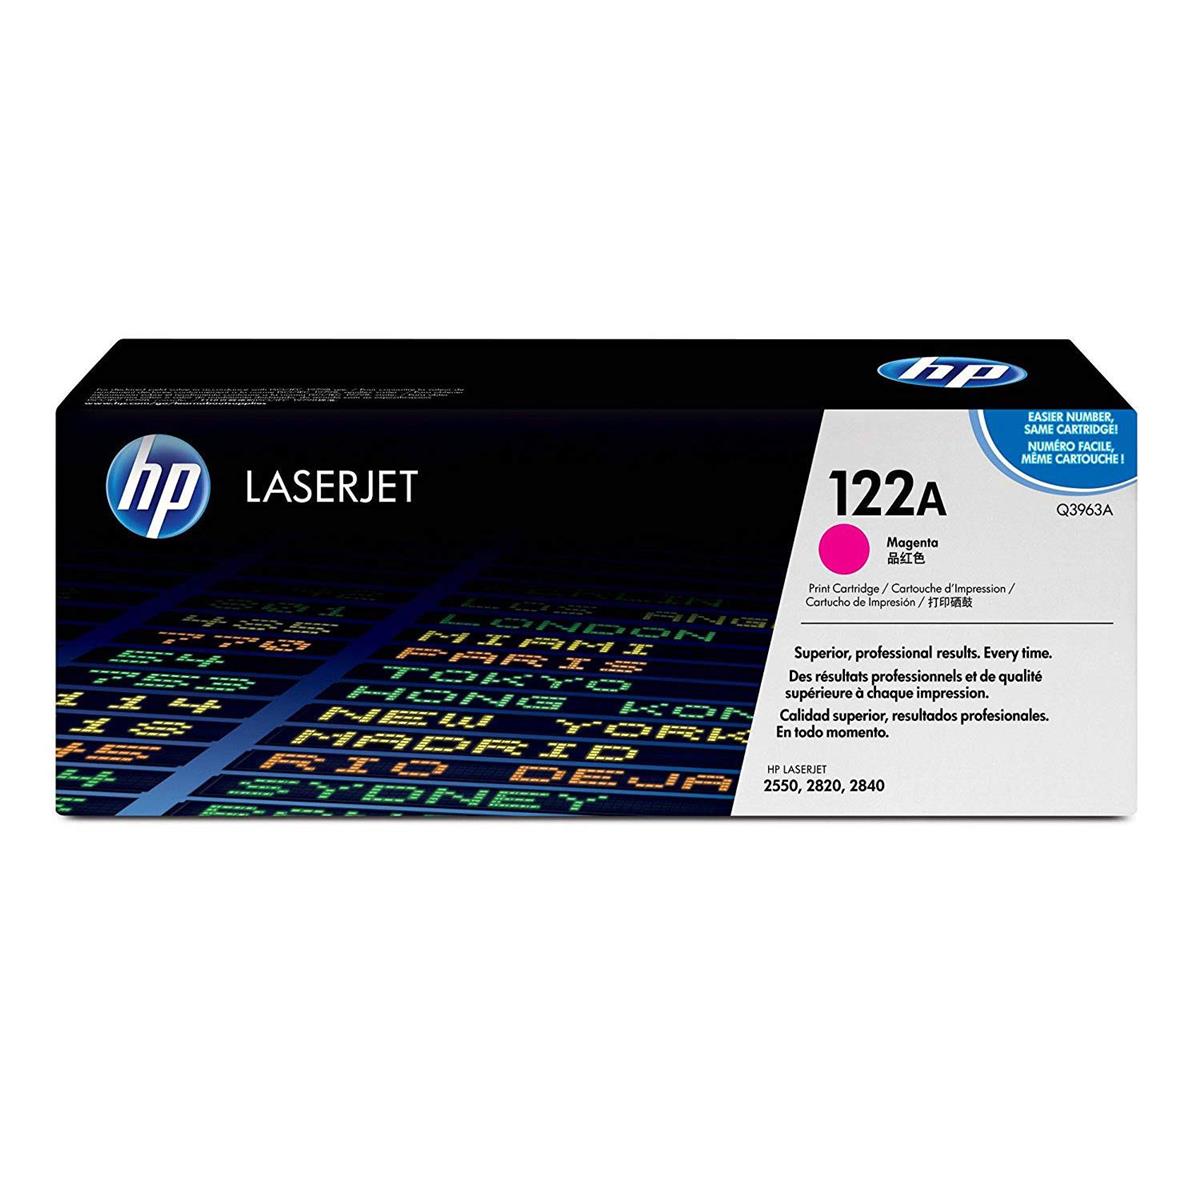 

HP Magenta Print Cartridge for HP LaserJet Printers